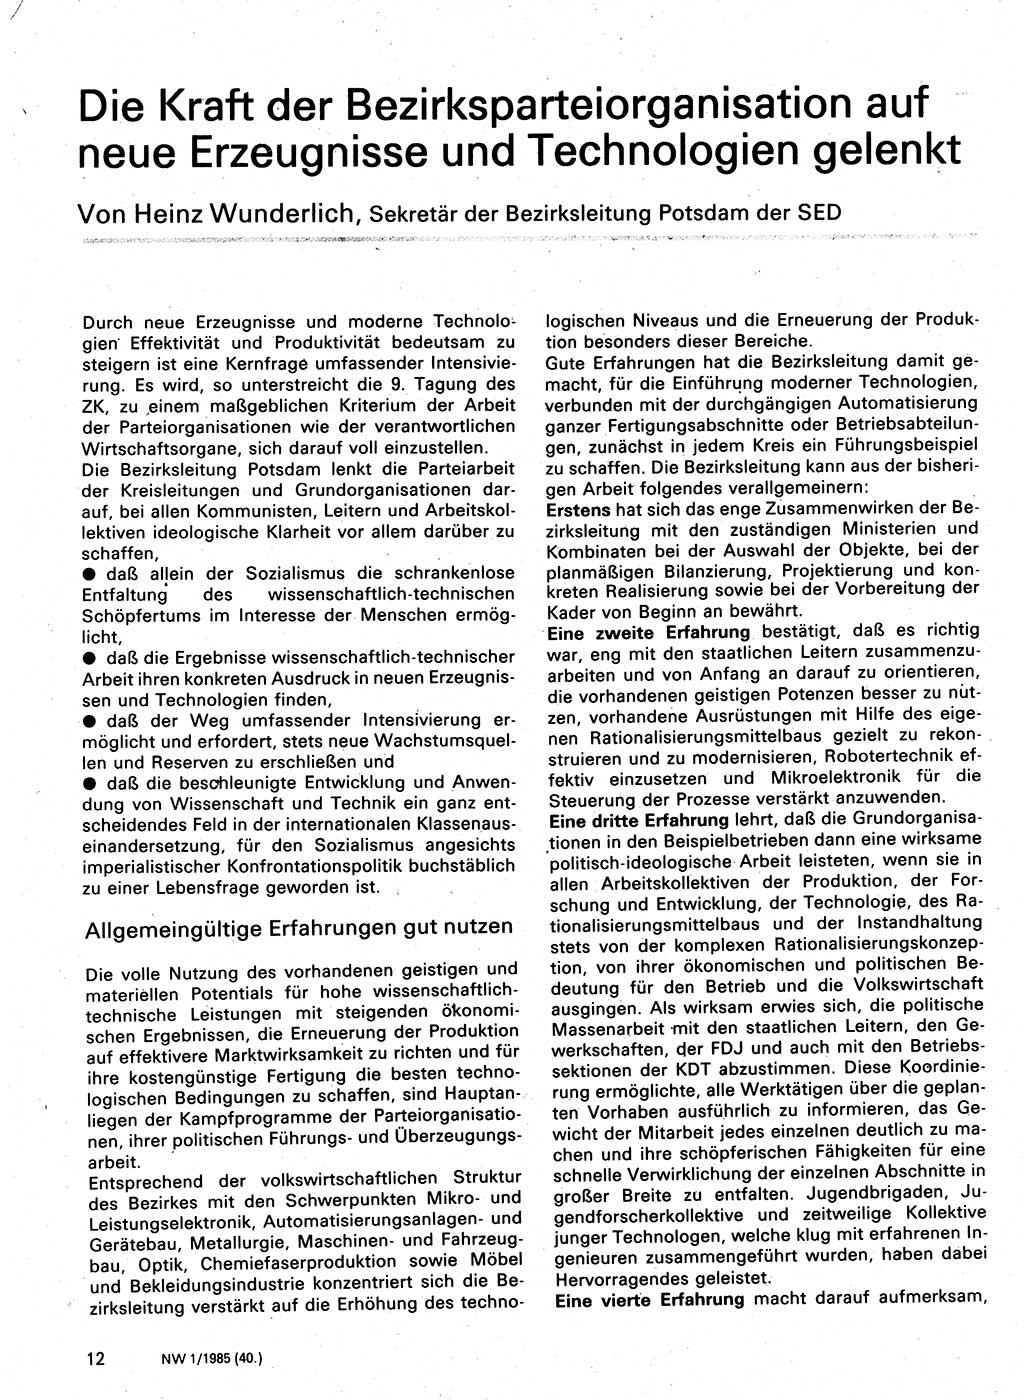 Neuer Weg (NW), Organ des Zentralkomitees (ZK) der SED (Sozialistische Einheitspartei Deutschlands) für Fragen des Parteilebens, 40. Jahrgang [Deutsche Demokratische Republik (DDR)] 1985, Seite 12 (NW ZK SED DDR 1985, S. 12)